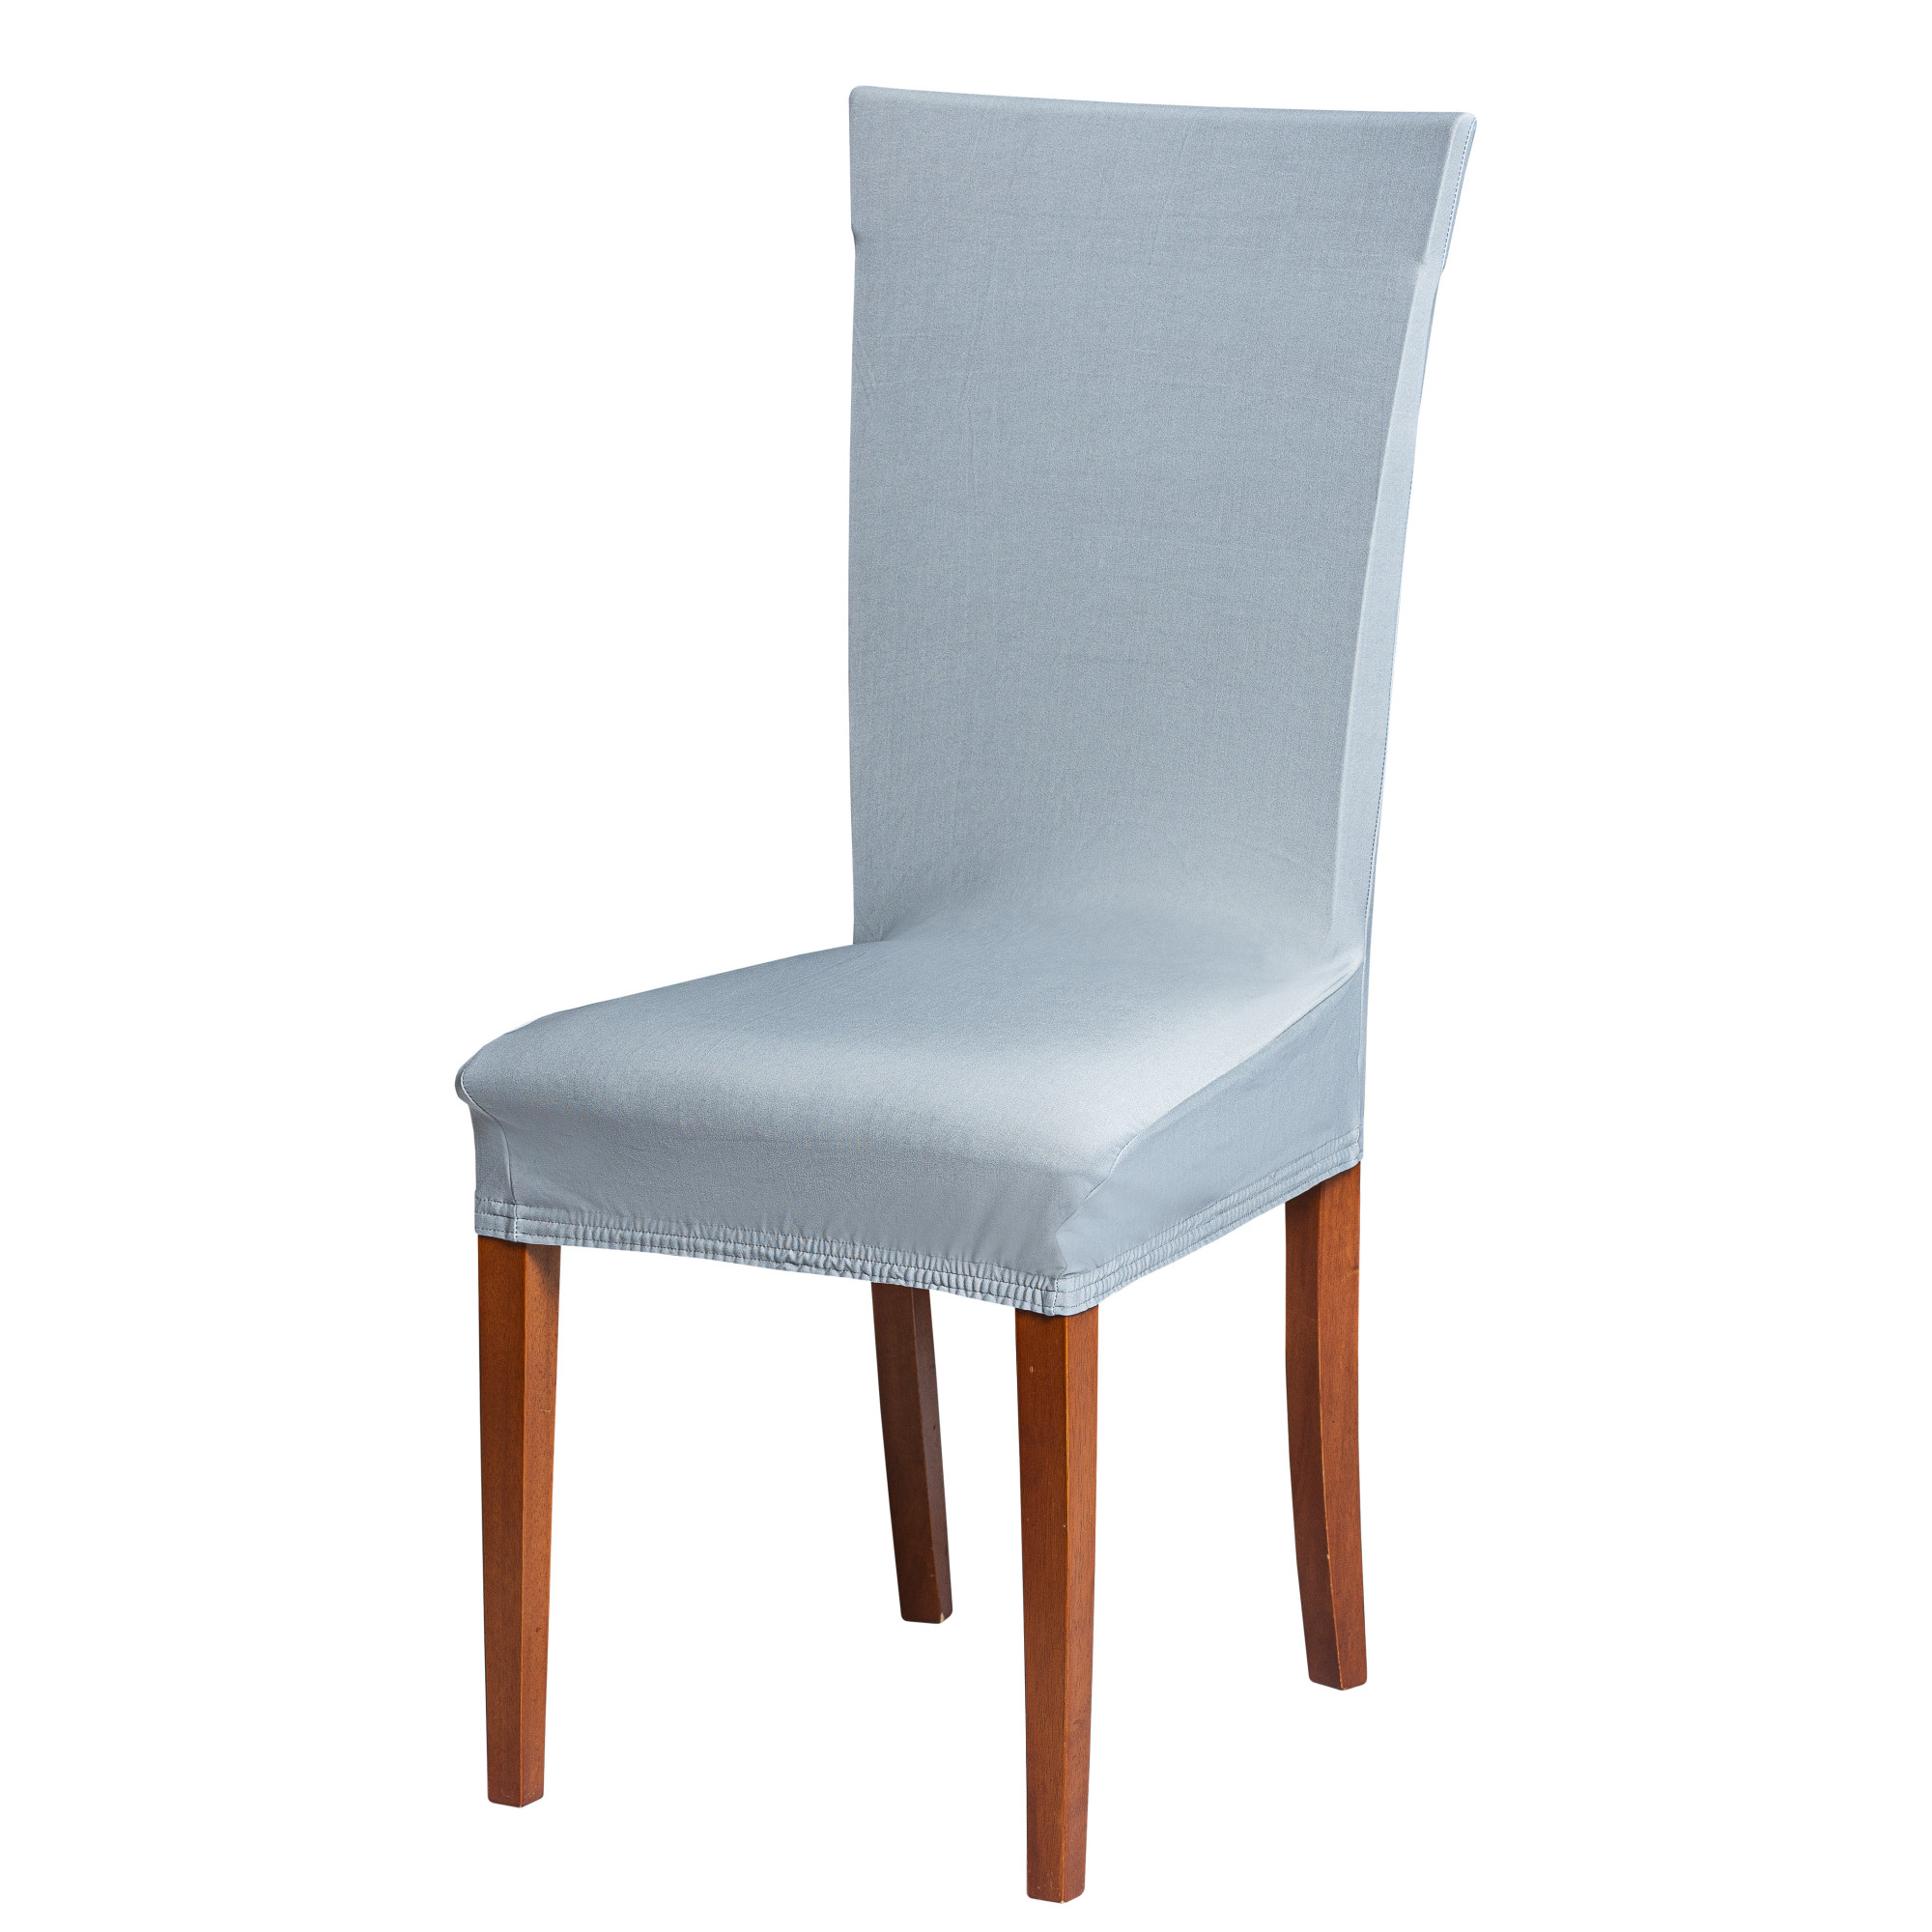 Univerzální elastický potah na židli - Baby blue